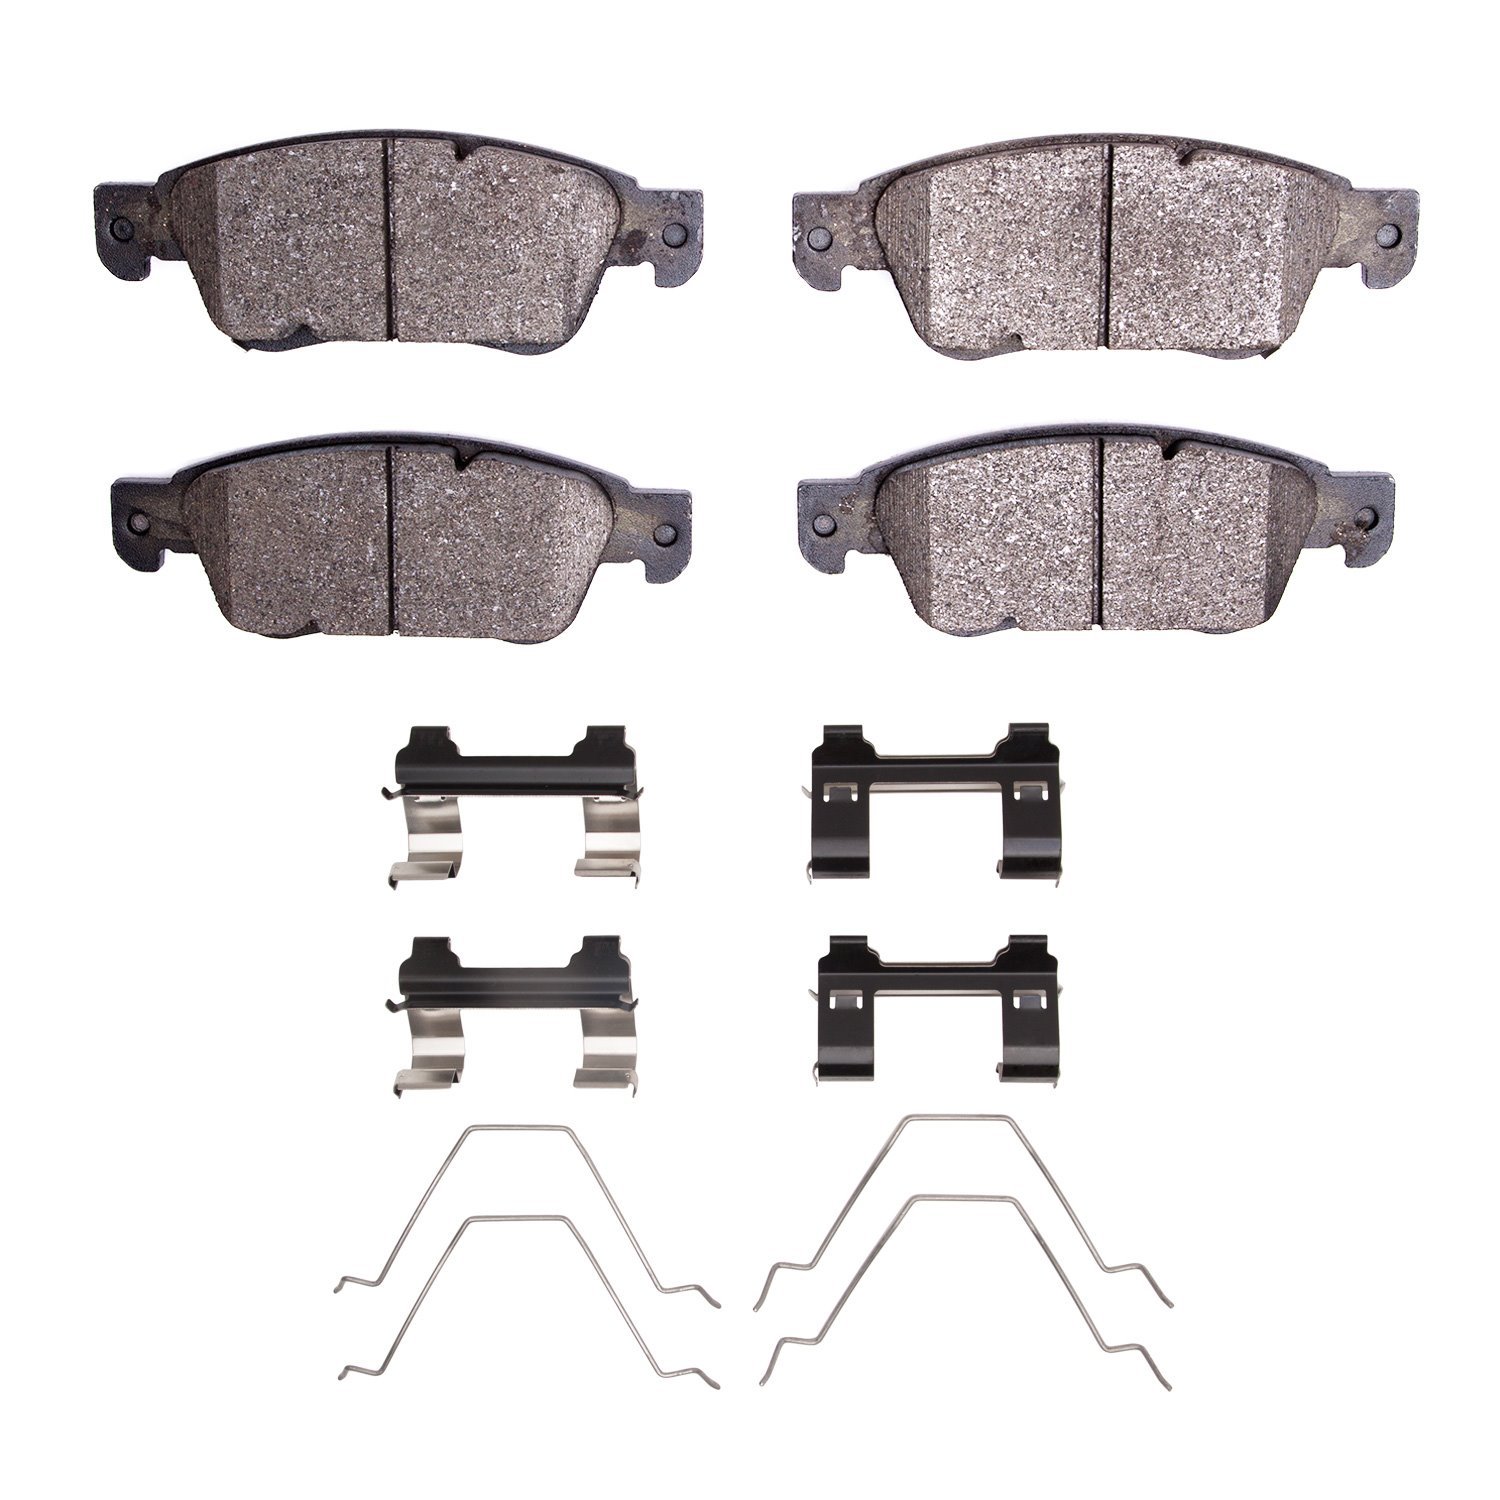 1551-1287-01 5000 Advanced Low-Metallic Brake Pads & Hardware Kit, 2007-2015 Infiniti/Nissan, Position: Front